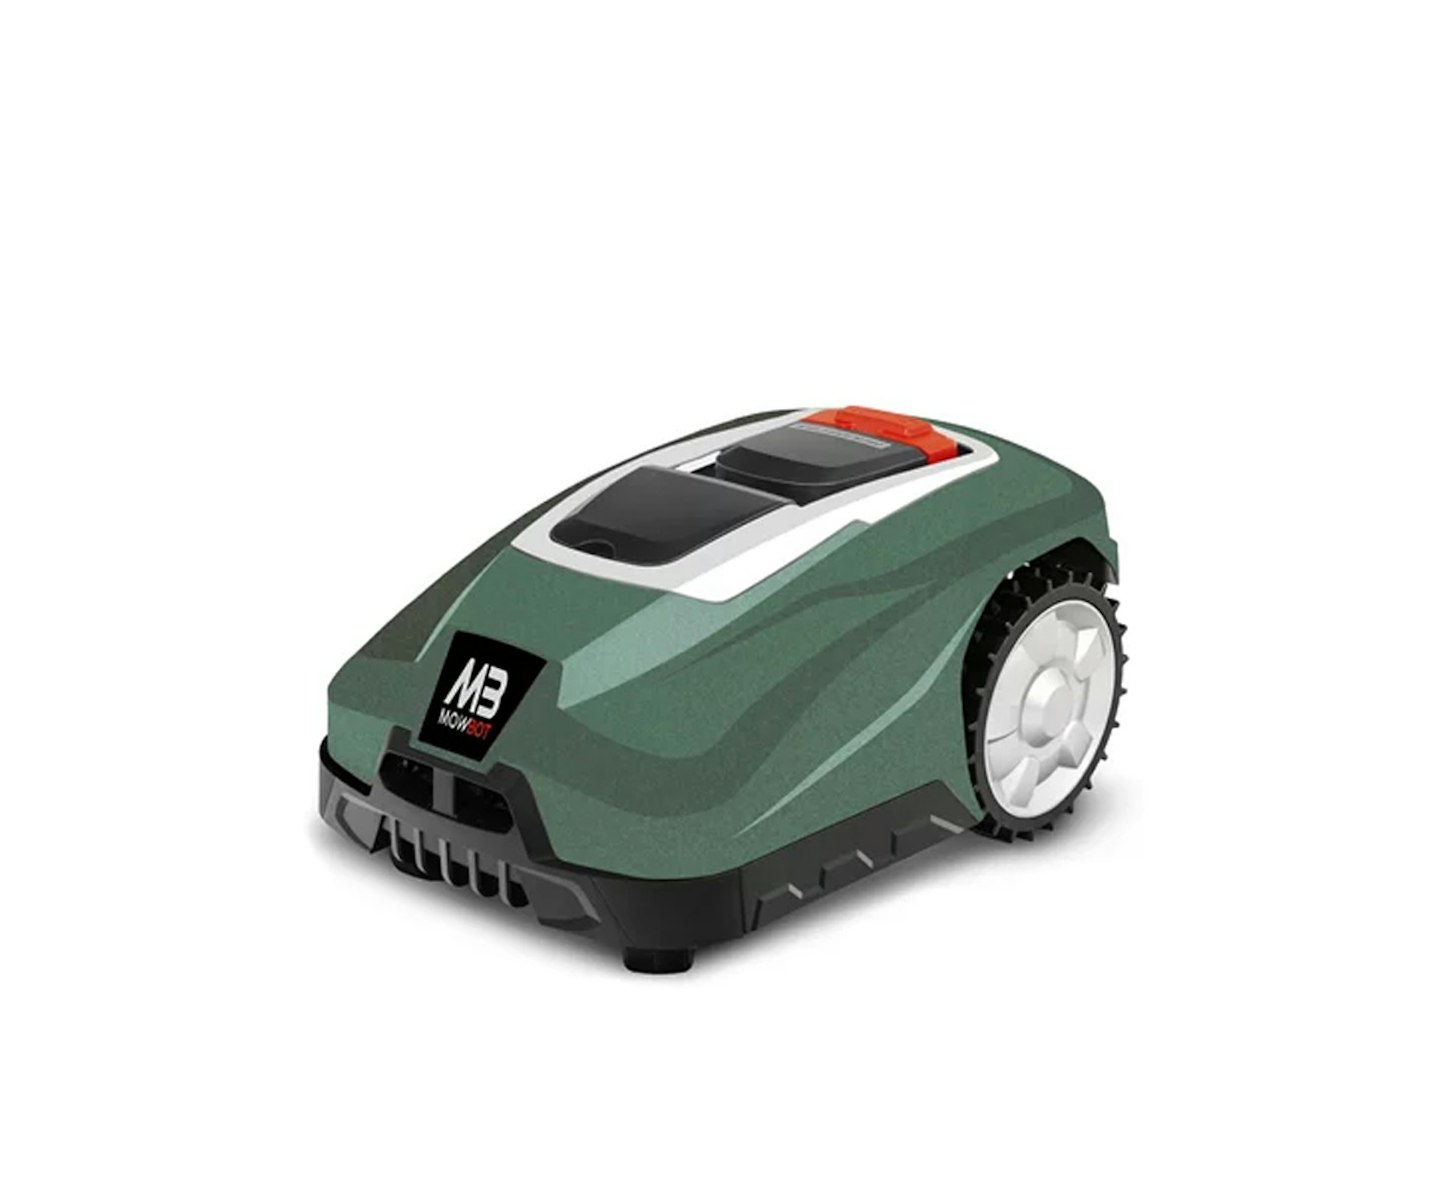 Mowbot 800 28v 2.5Ah Robotic Lawnmower Metallic Green